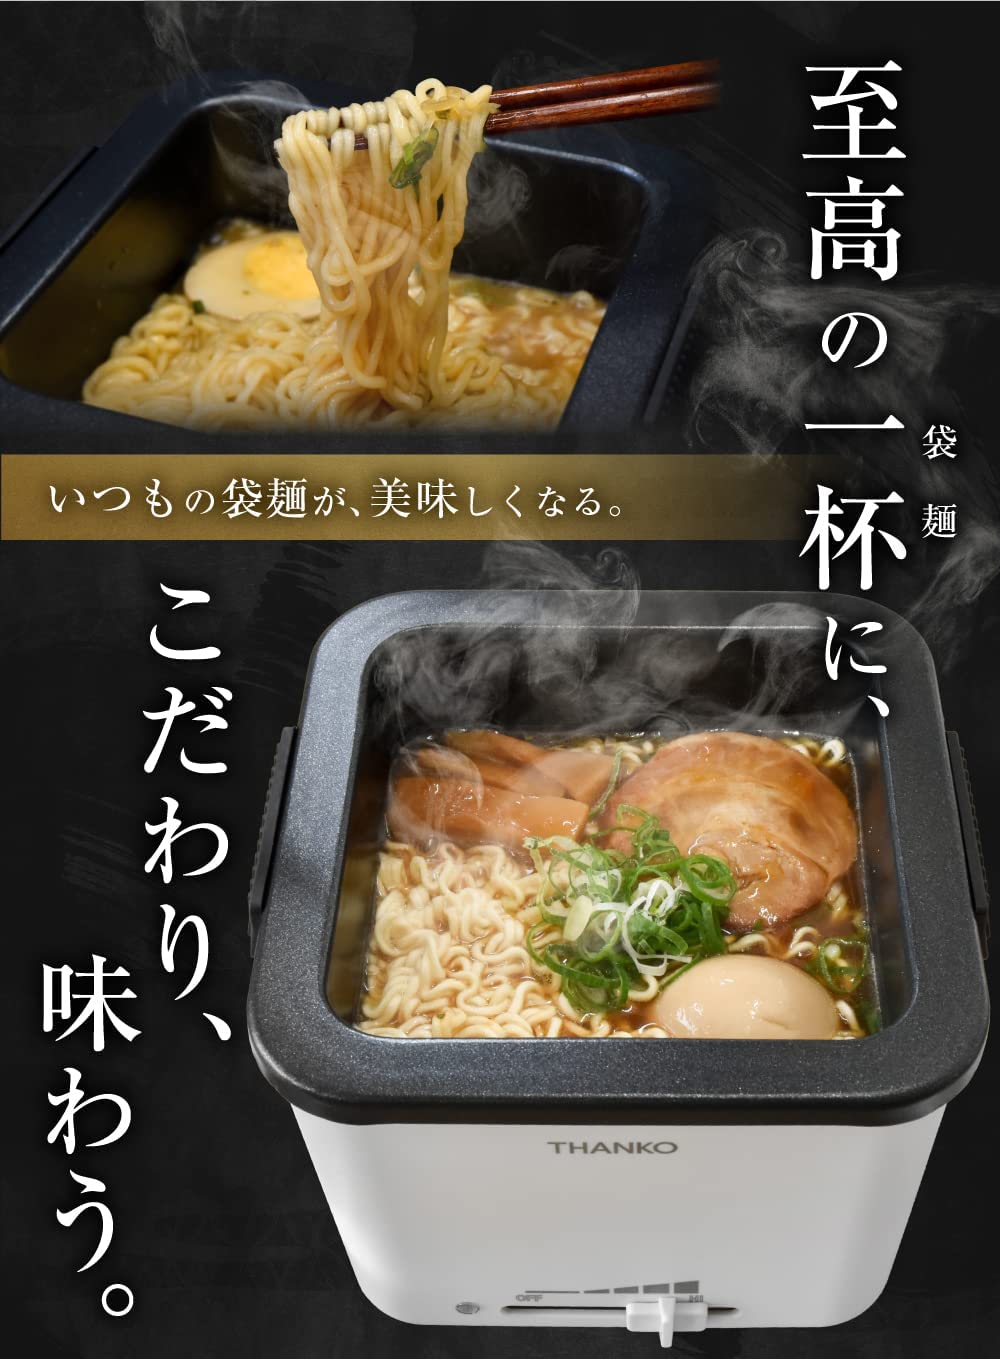 Thanko Mini Food Warming Plate